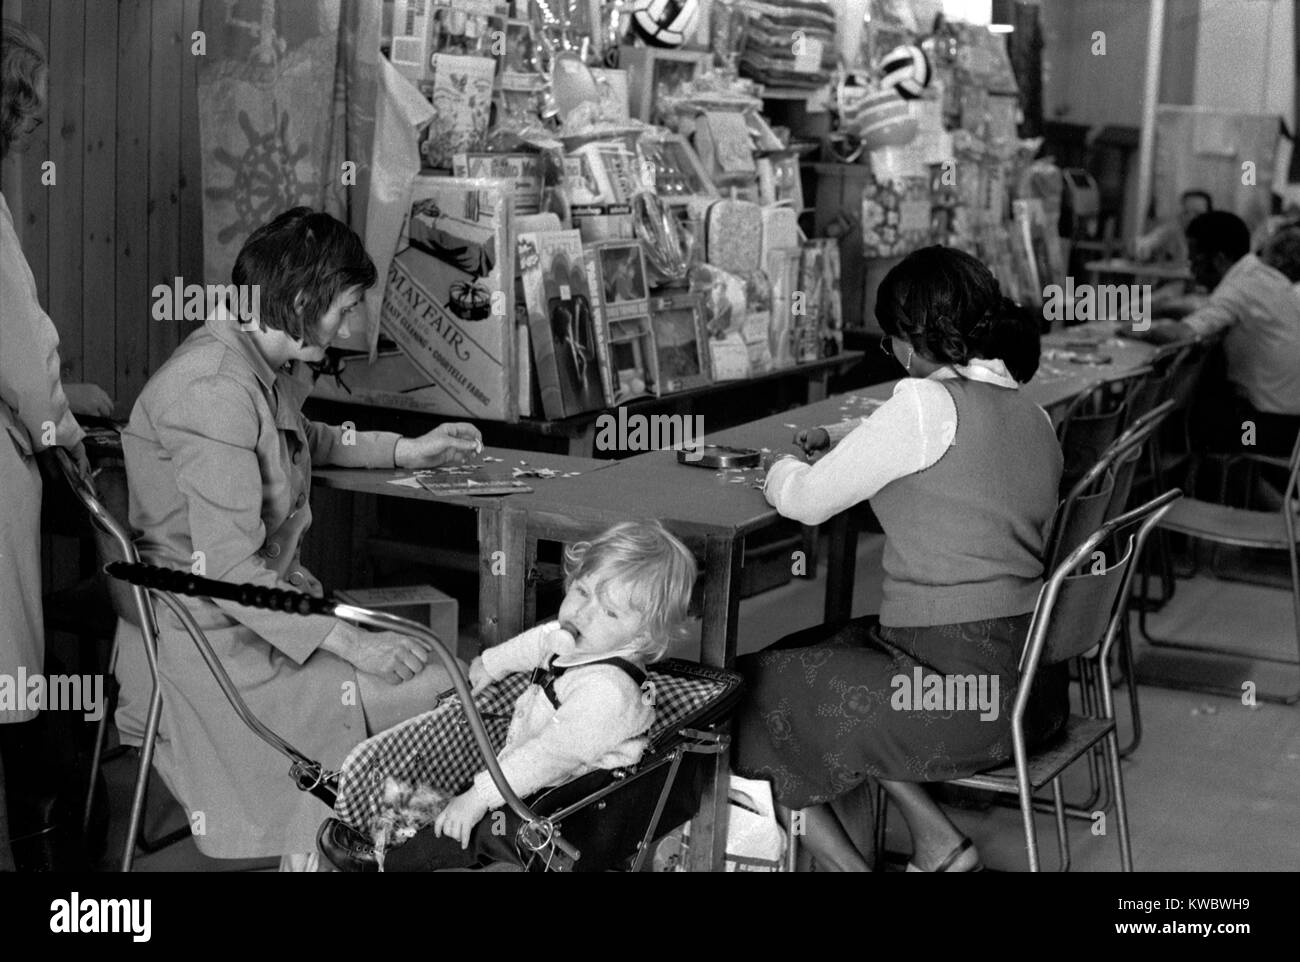 1970s Royaume-Uni Londres mère et enfant jouant Bingo dans une arcade d'amusement. Portobello Road, Notting Hill Angleterre 1975 HOMER SYKES Banque D'Images